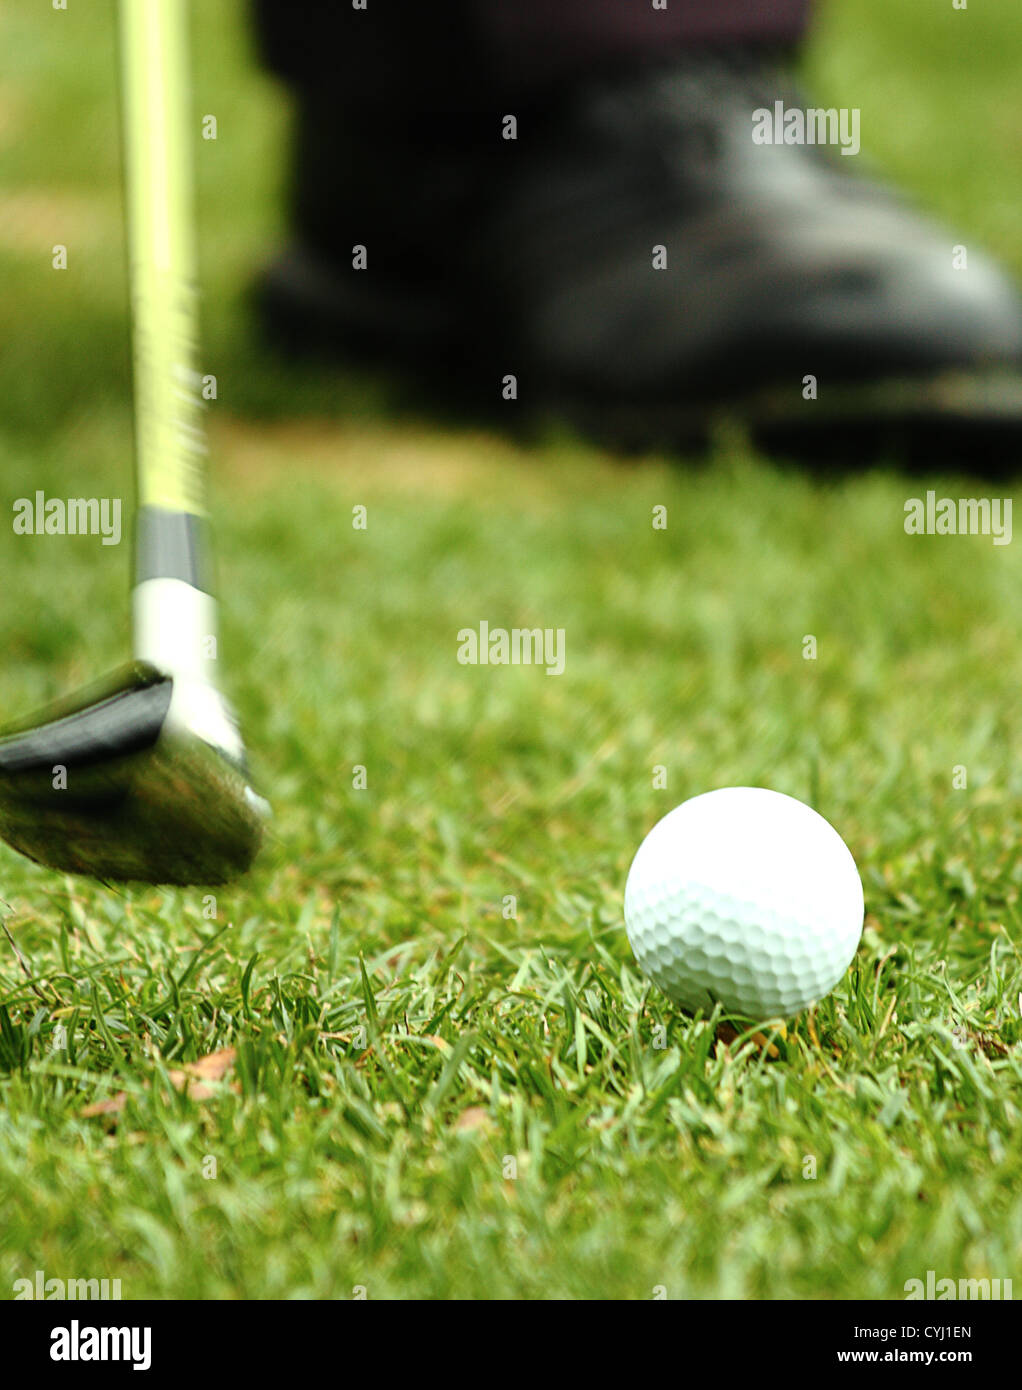 Fahren einen Golfball vom Abschlag In einem Golfturnier Stockfoto